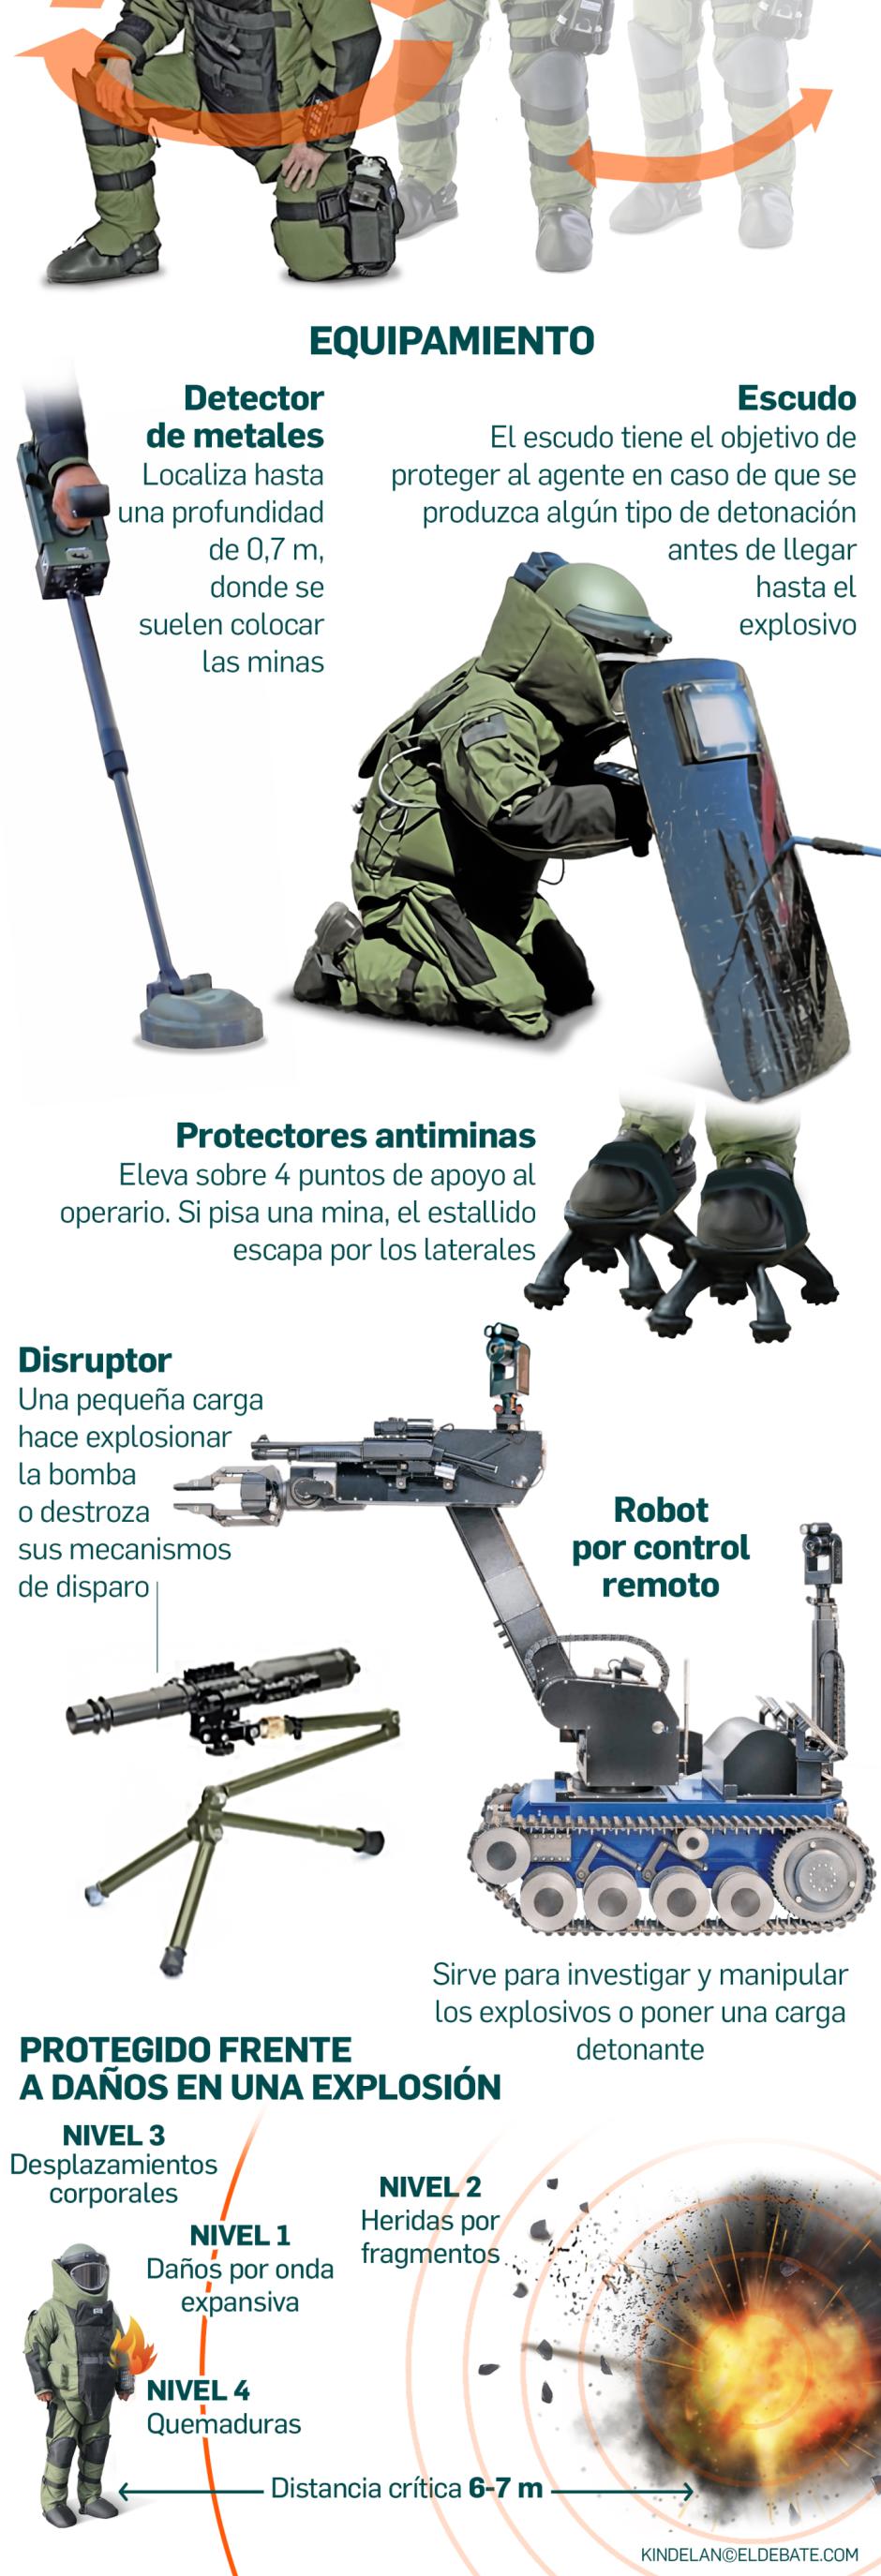 Las actuales herramientas de los TEDAX ofrecen la mayor protección ante artefactos explosivos